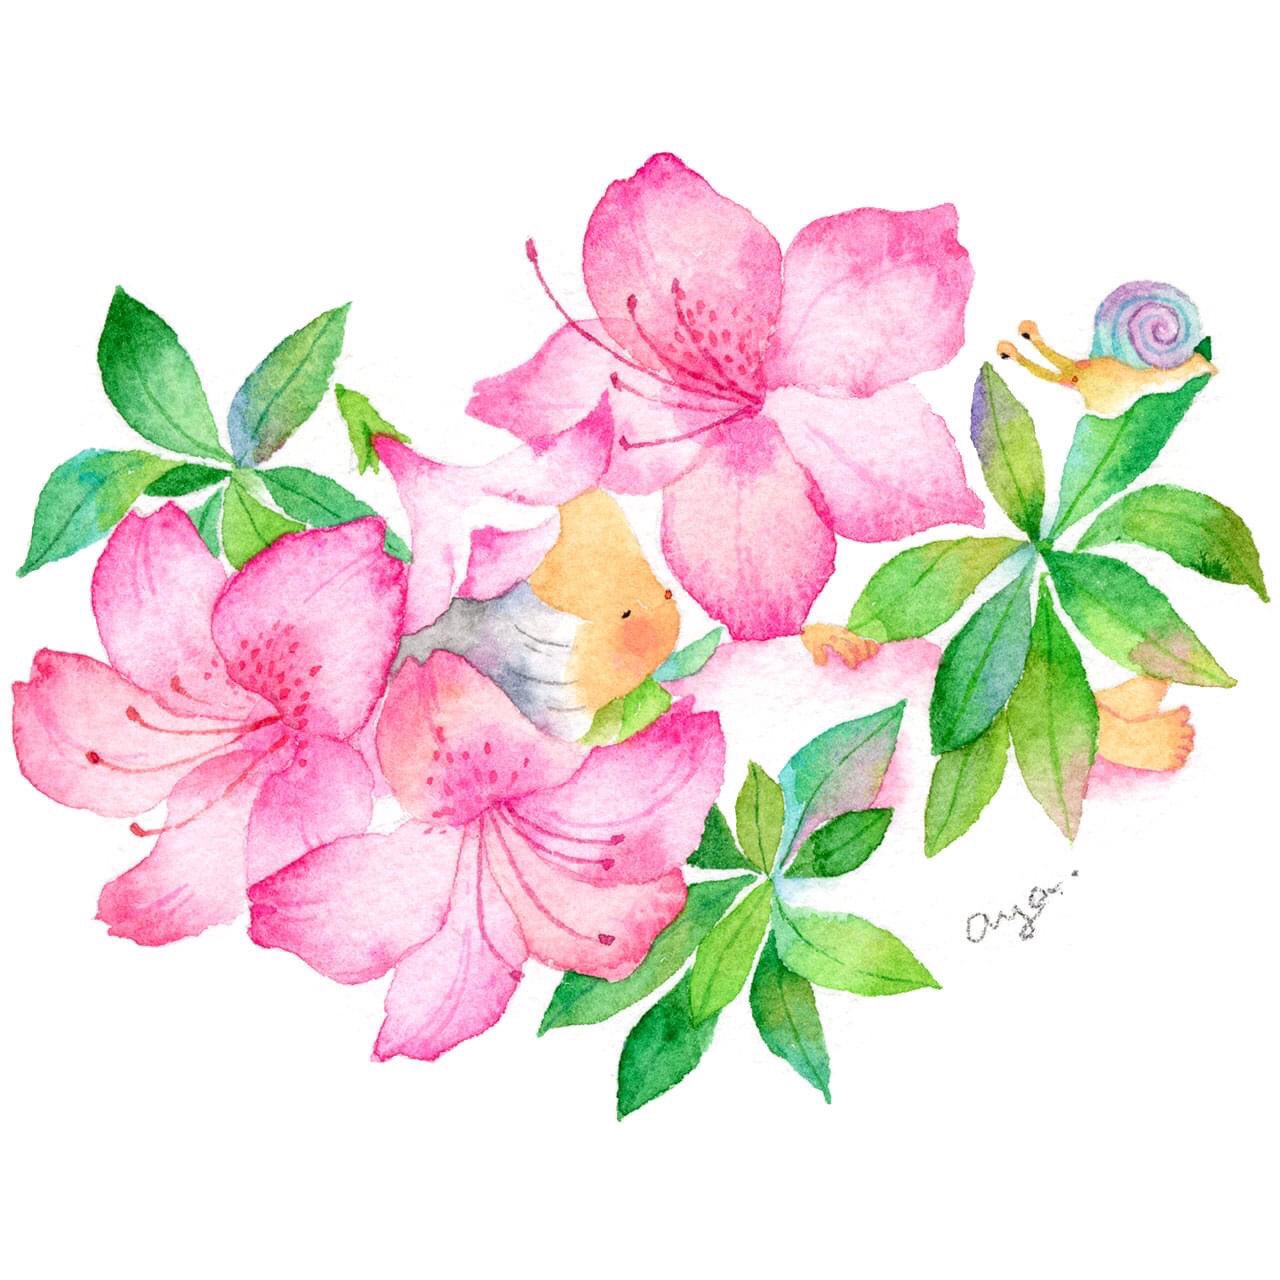 Twitter 上的 こばやしあや 6月の花 皐月 さつき A Dwarf Azalea 花言葉は 節制 さつきはつつじよりも花が小さいそうです 絵 水彩画 水彩 透明水彩 イラスト Drawing Illustration Watercolor Art スケッチ こばやしあや 花言葉 誕生